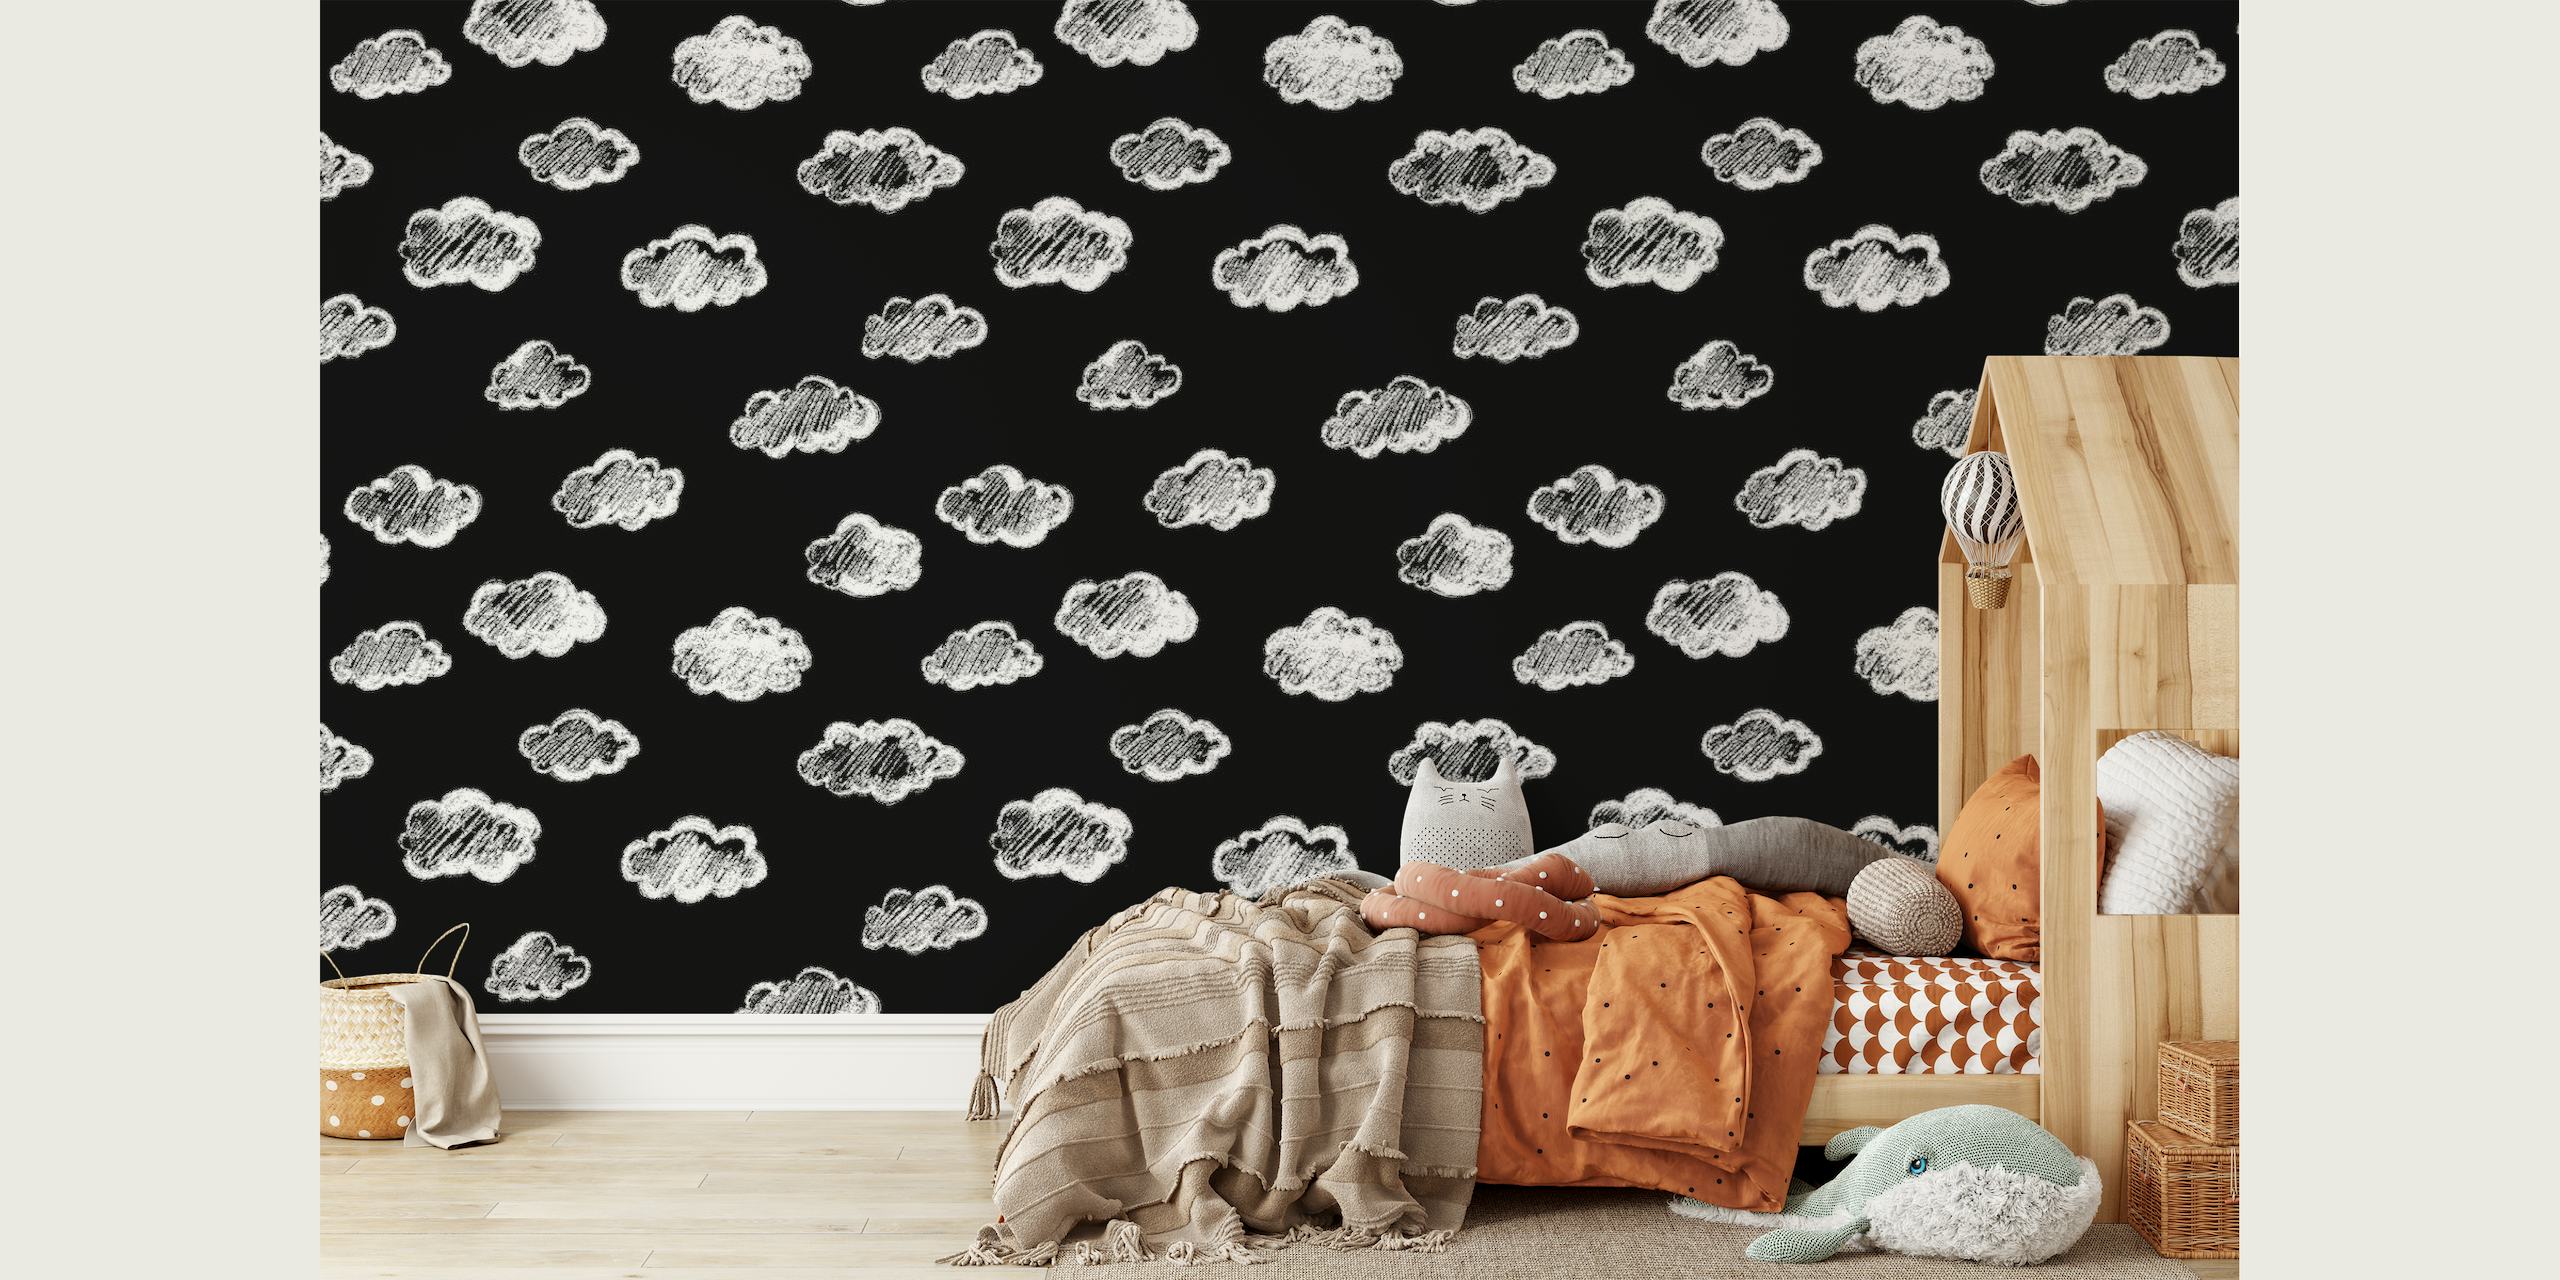 Mural artístico de parede preto com desenhos de nuvens de giz branco de happywall.com